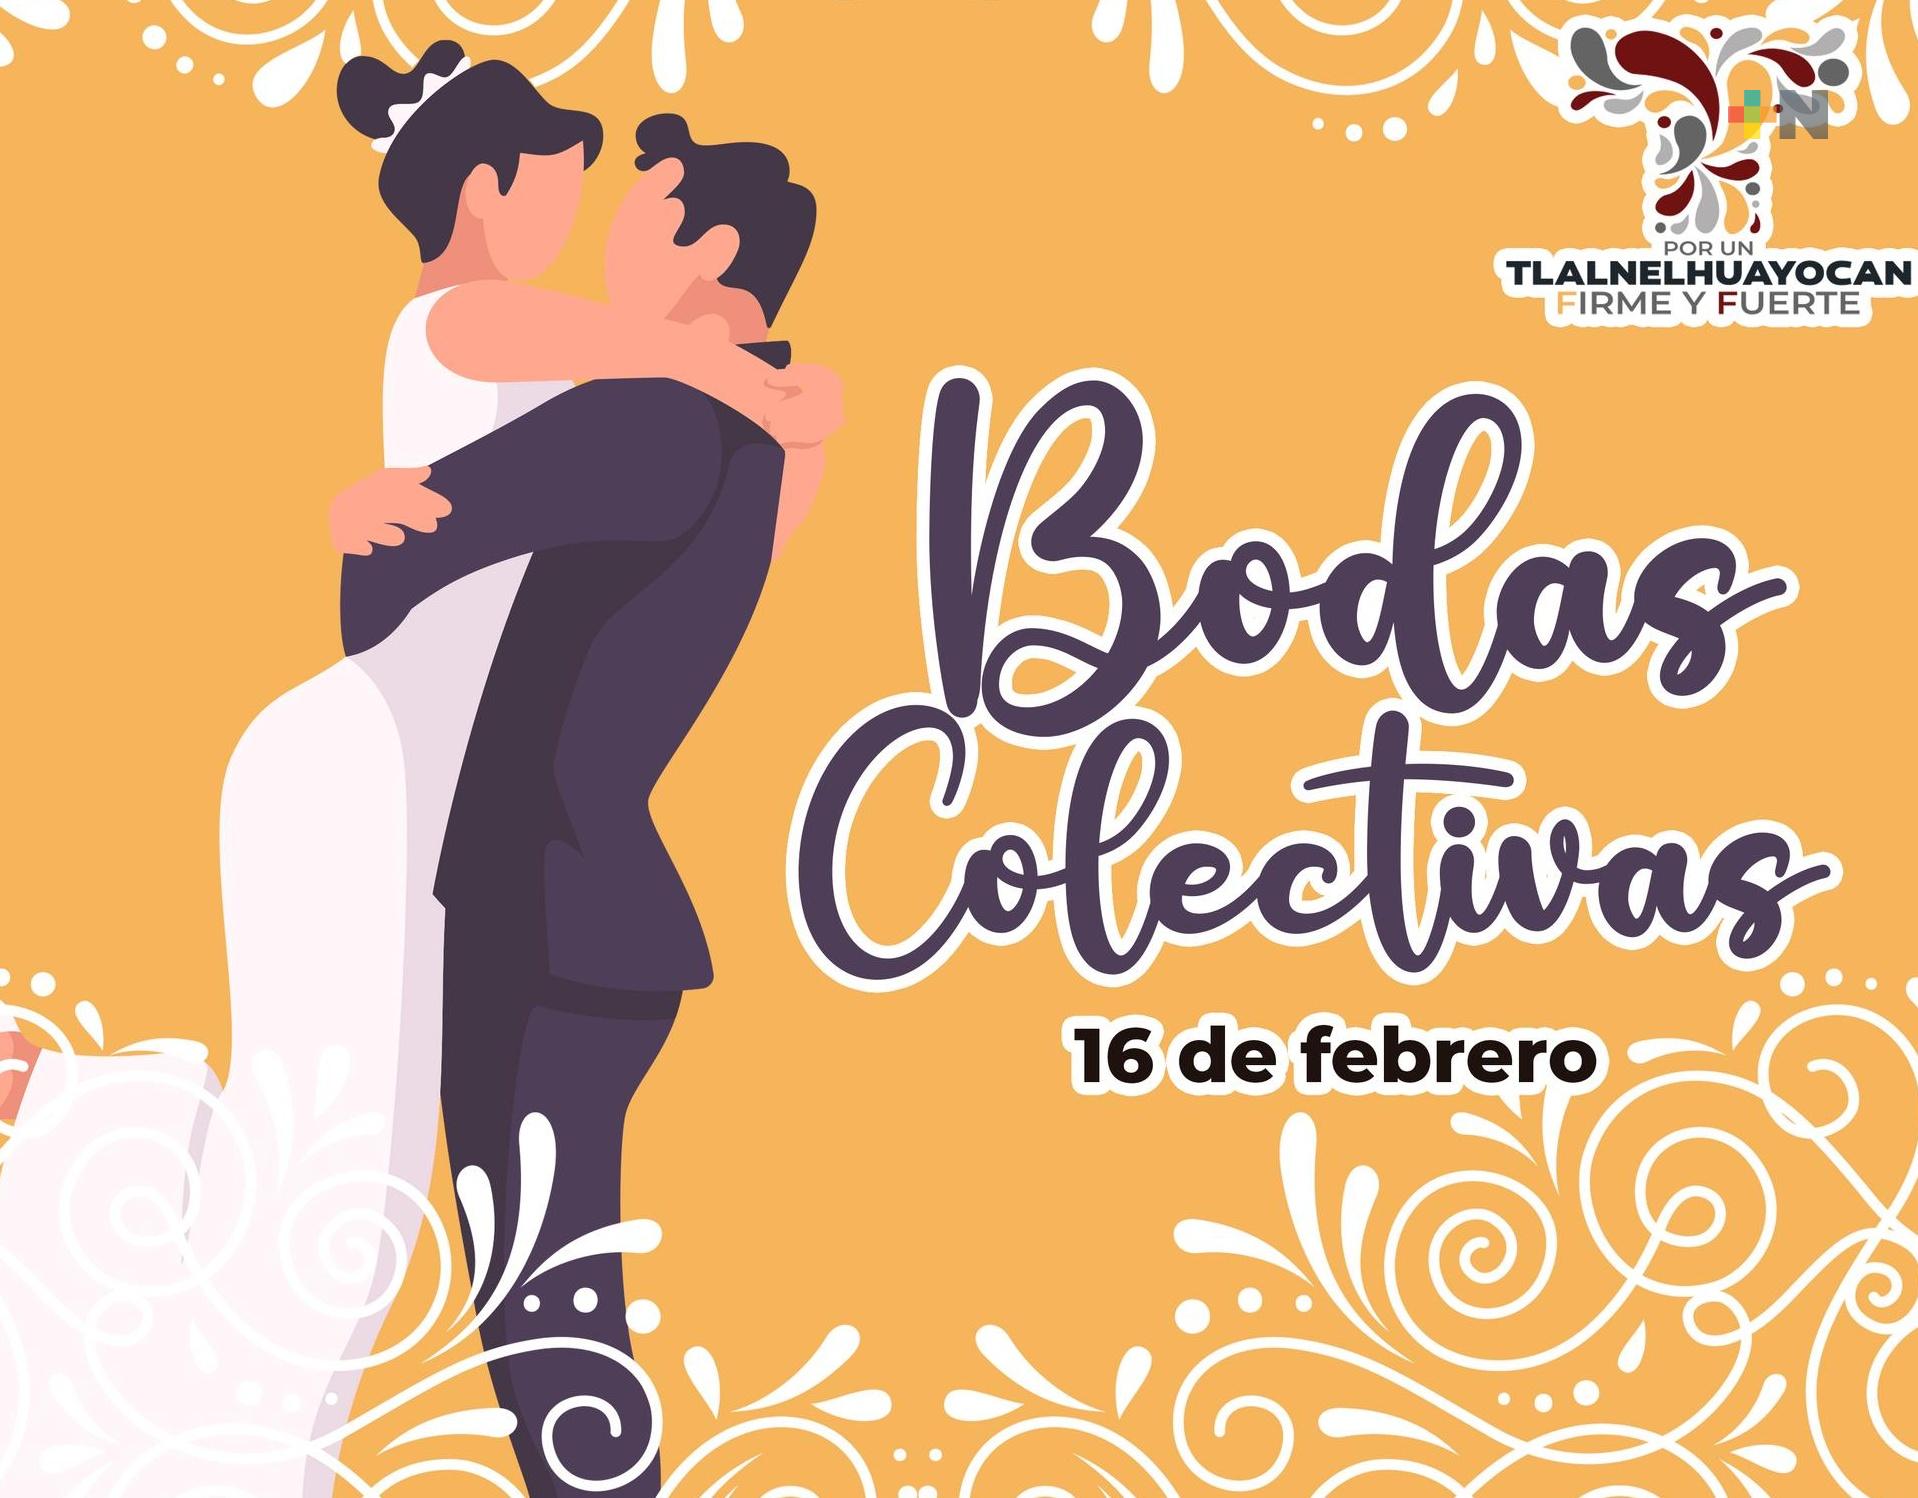 En Tlalnelhuayocan convocan a participar en boda colectiva